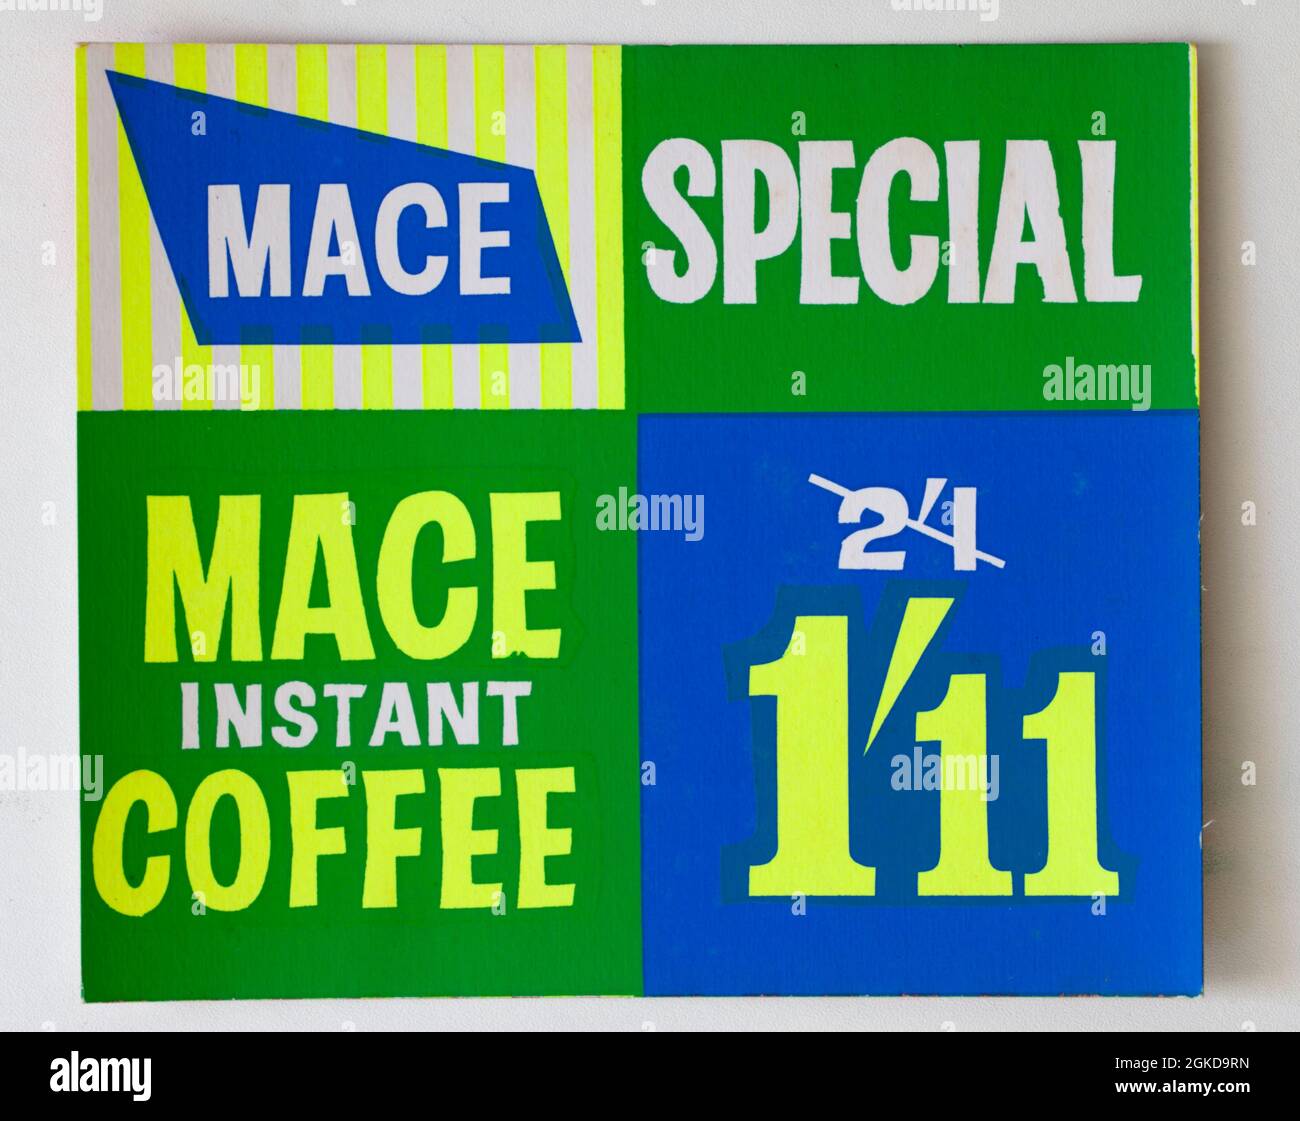 Carte d'affichage des prix du Mace Shop vintage des années 1960 - café instantané Banque D'Images